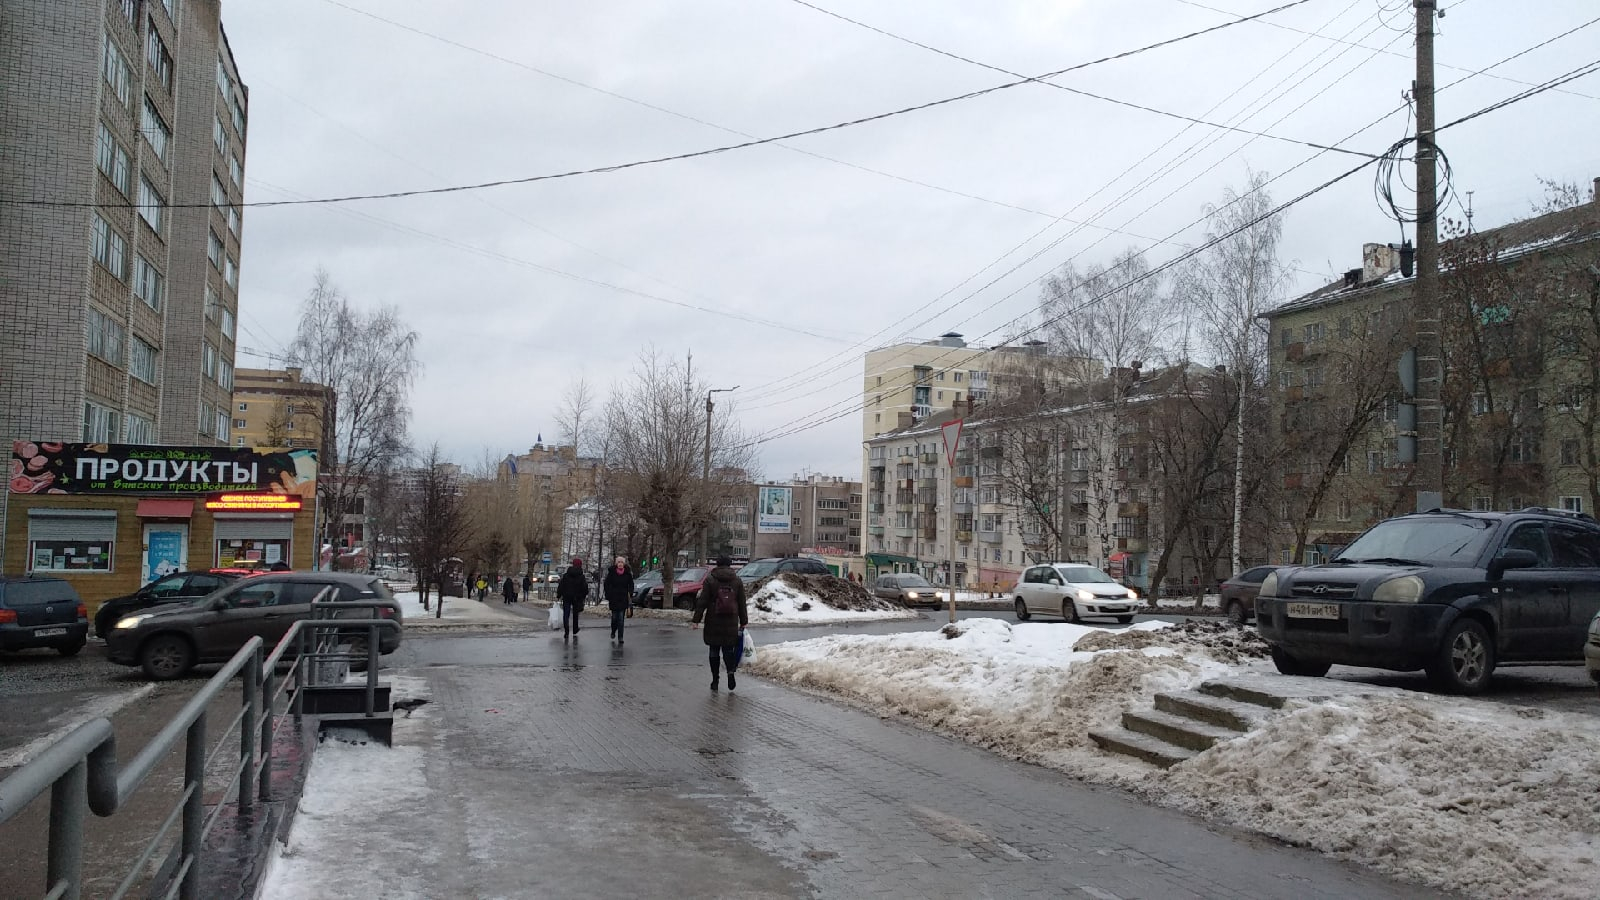 12 градусов выше нормы: метеорологи о погоде в Кирове в конце января